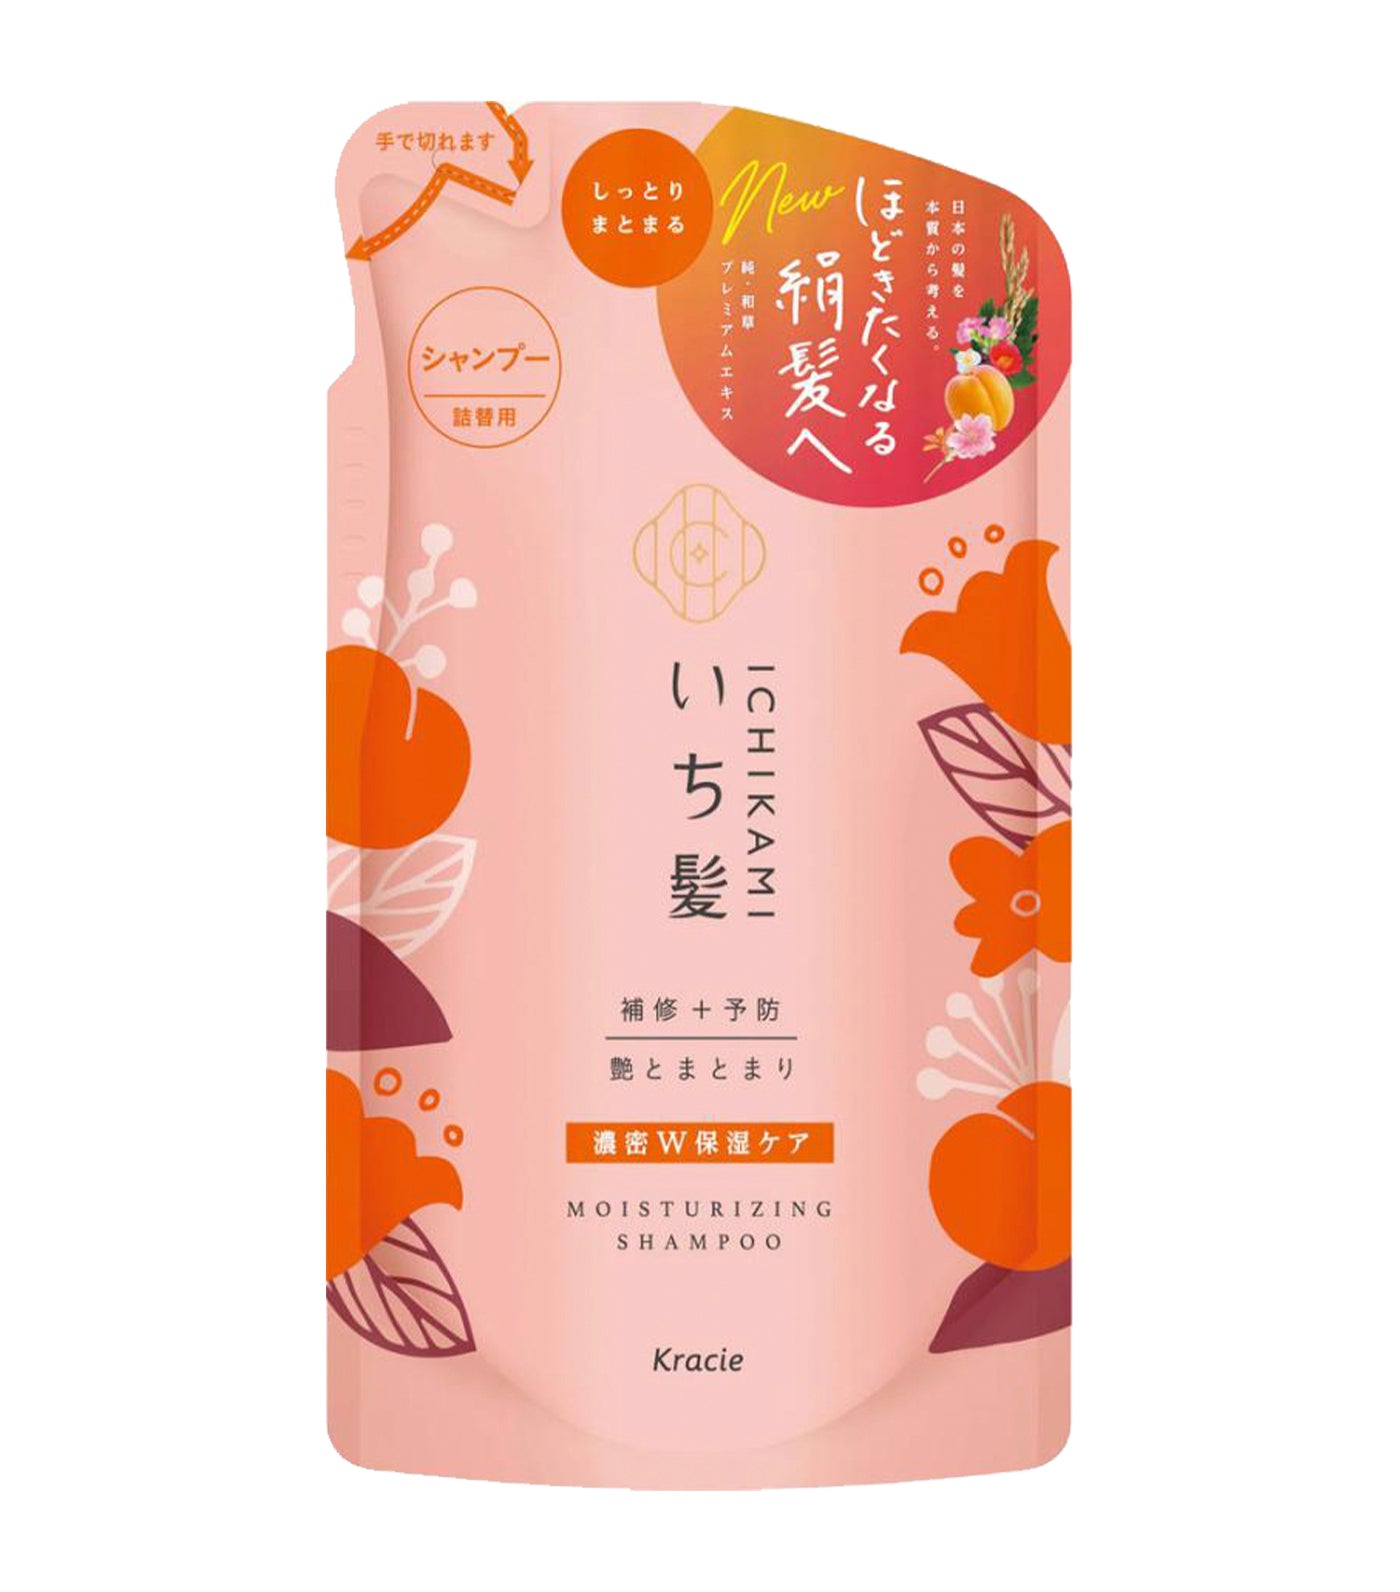 Ichikami Moisturizing Shampoo Refill Pack